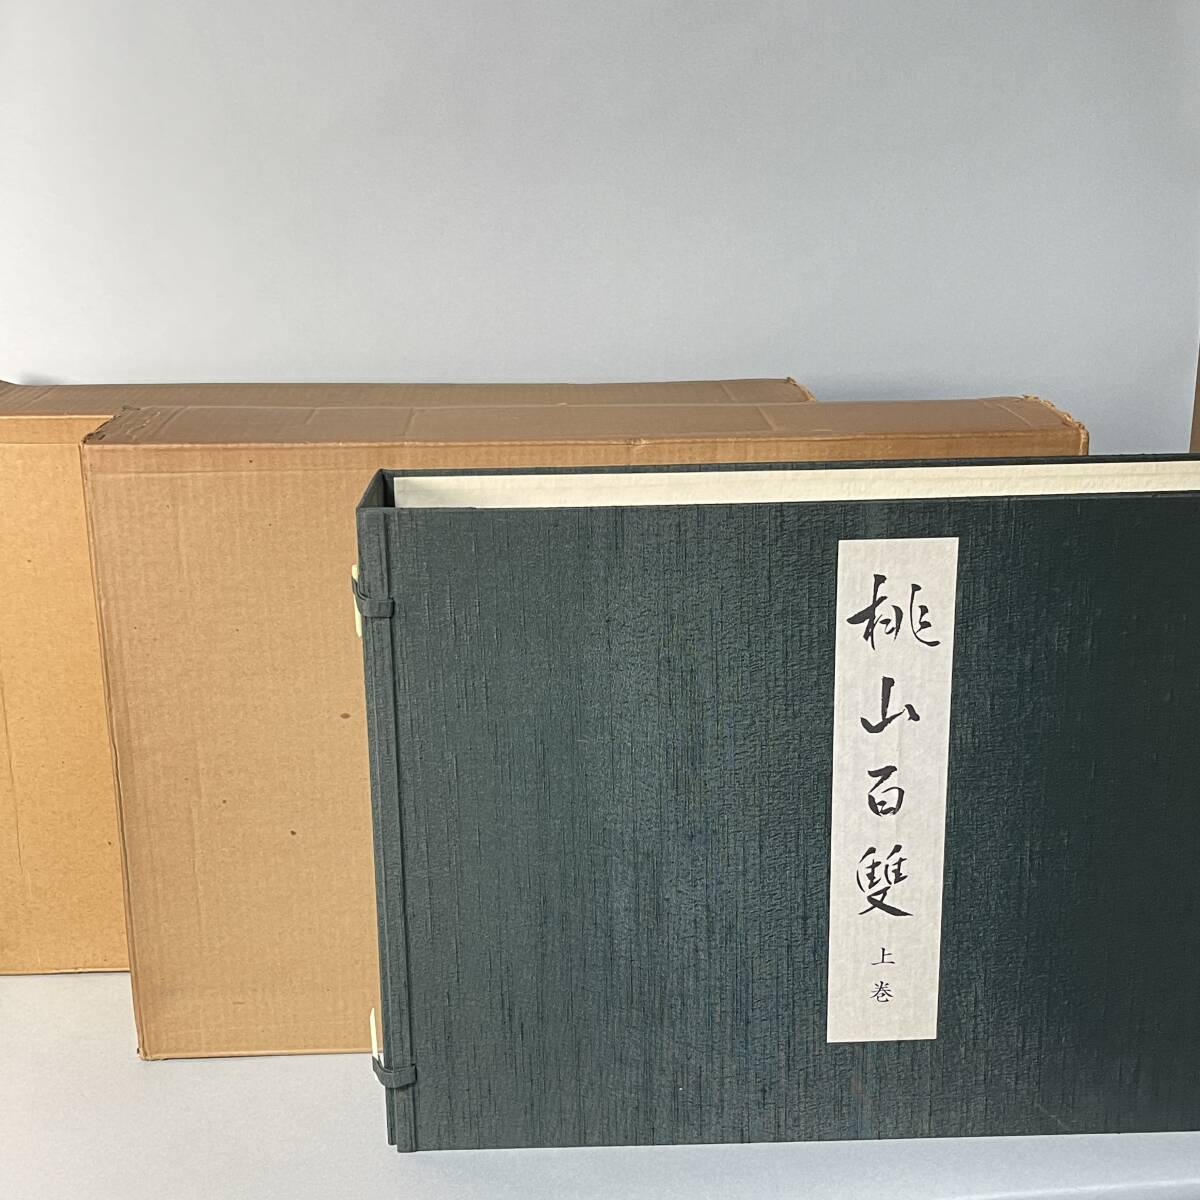 Momoyama Hyakusou Volúmenes 1 y 2 Libro grande Catálogo Limitado a 500 copias Fuji Art Publicado en 1975 Castillo Fushimi Castillo Momoyama Biombo pintado 300, 000 yenes Momoyama Hyakusou B3, Cuadro, Libro de arte, Recopilación, Catalogar